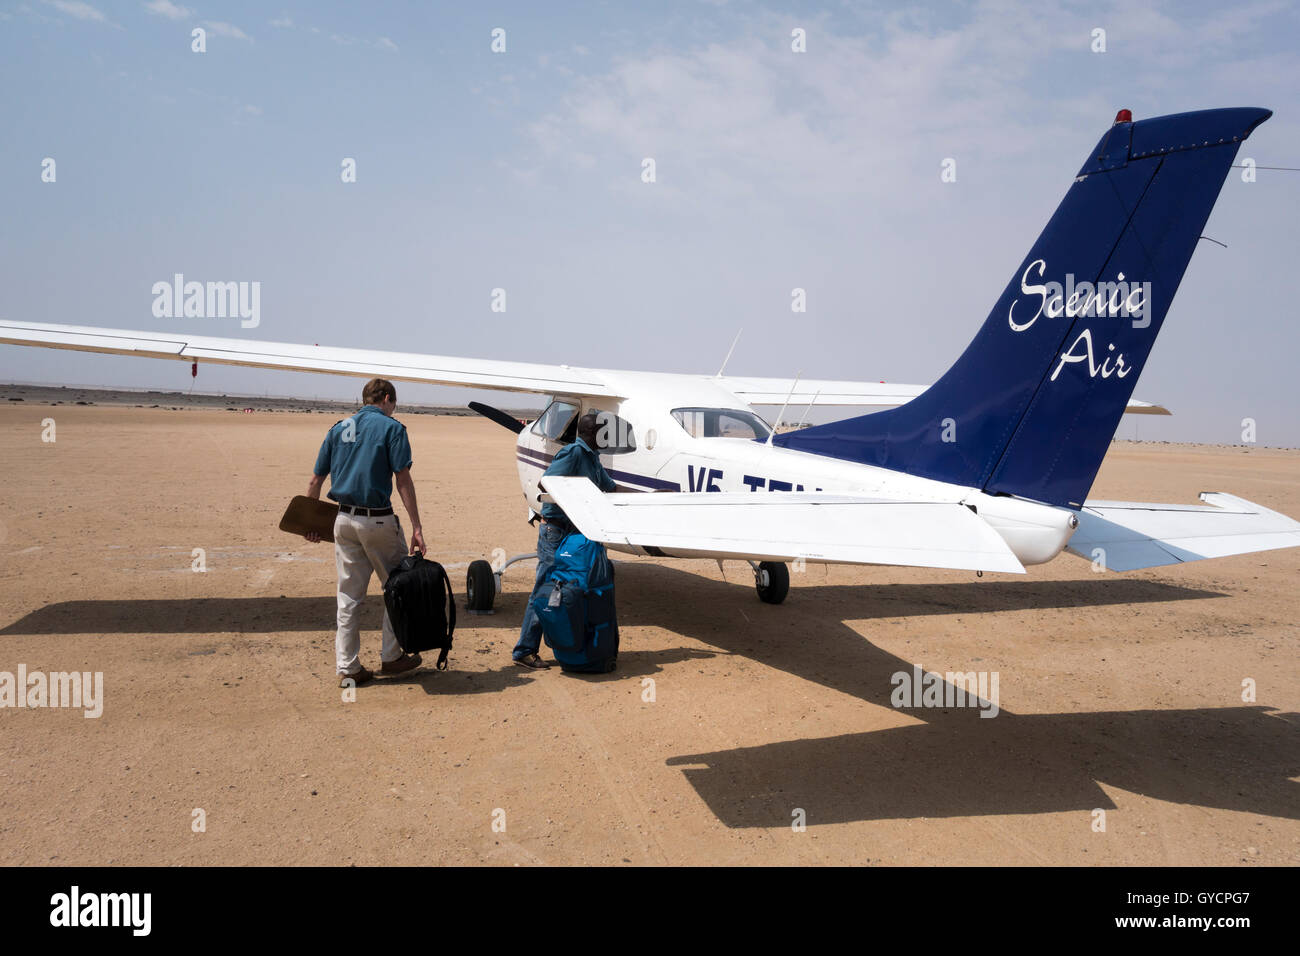 Air Namibia Plane Stockfotos und -bilder Kaufen - Alamy